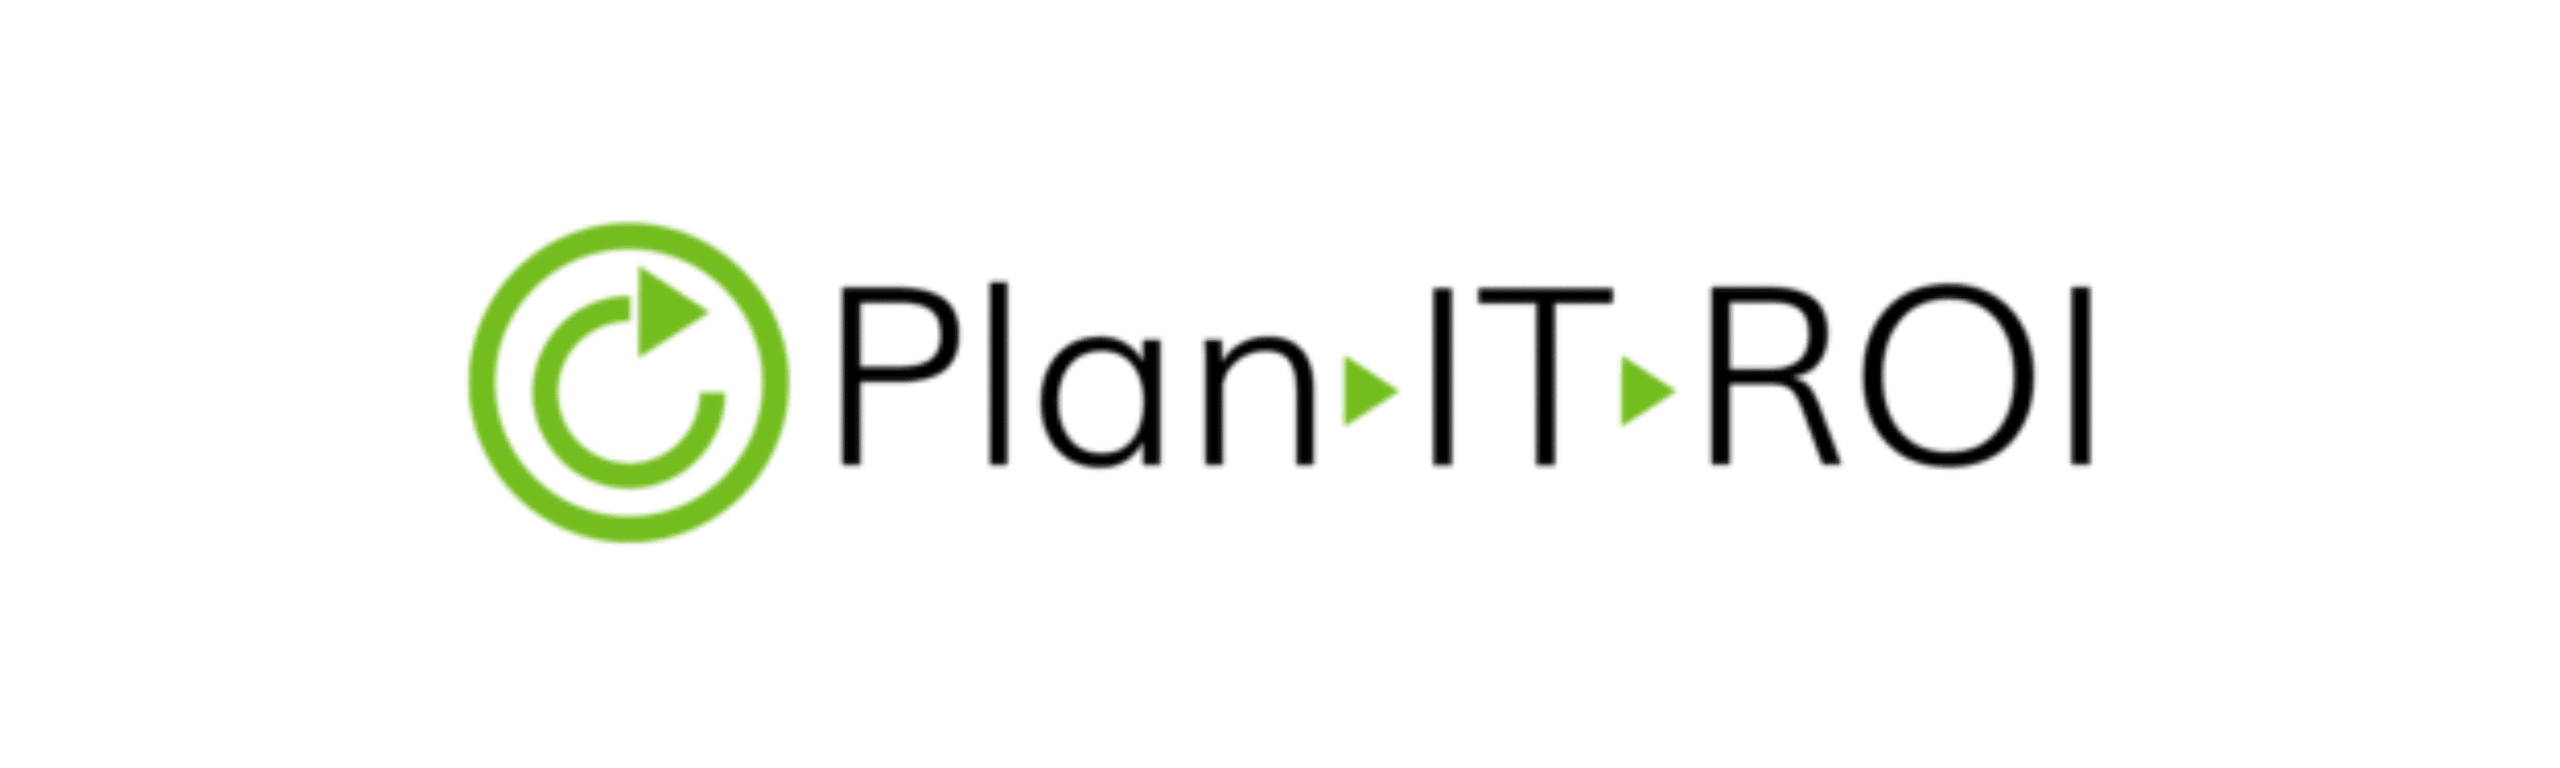 PlanITROI logo